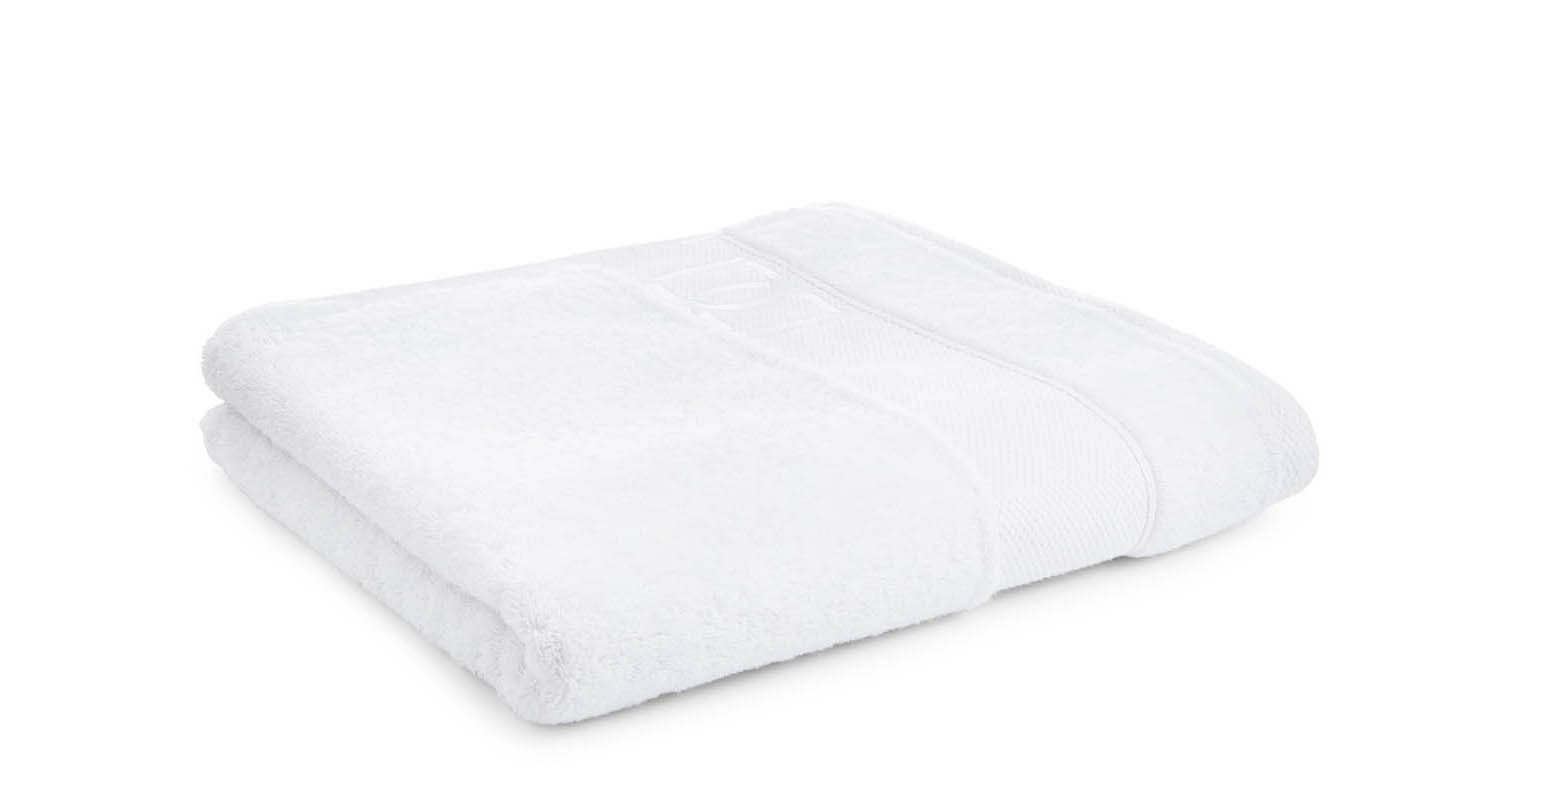 Liddell 700 GSM 100% cotton bath sheet